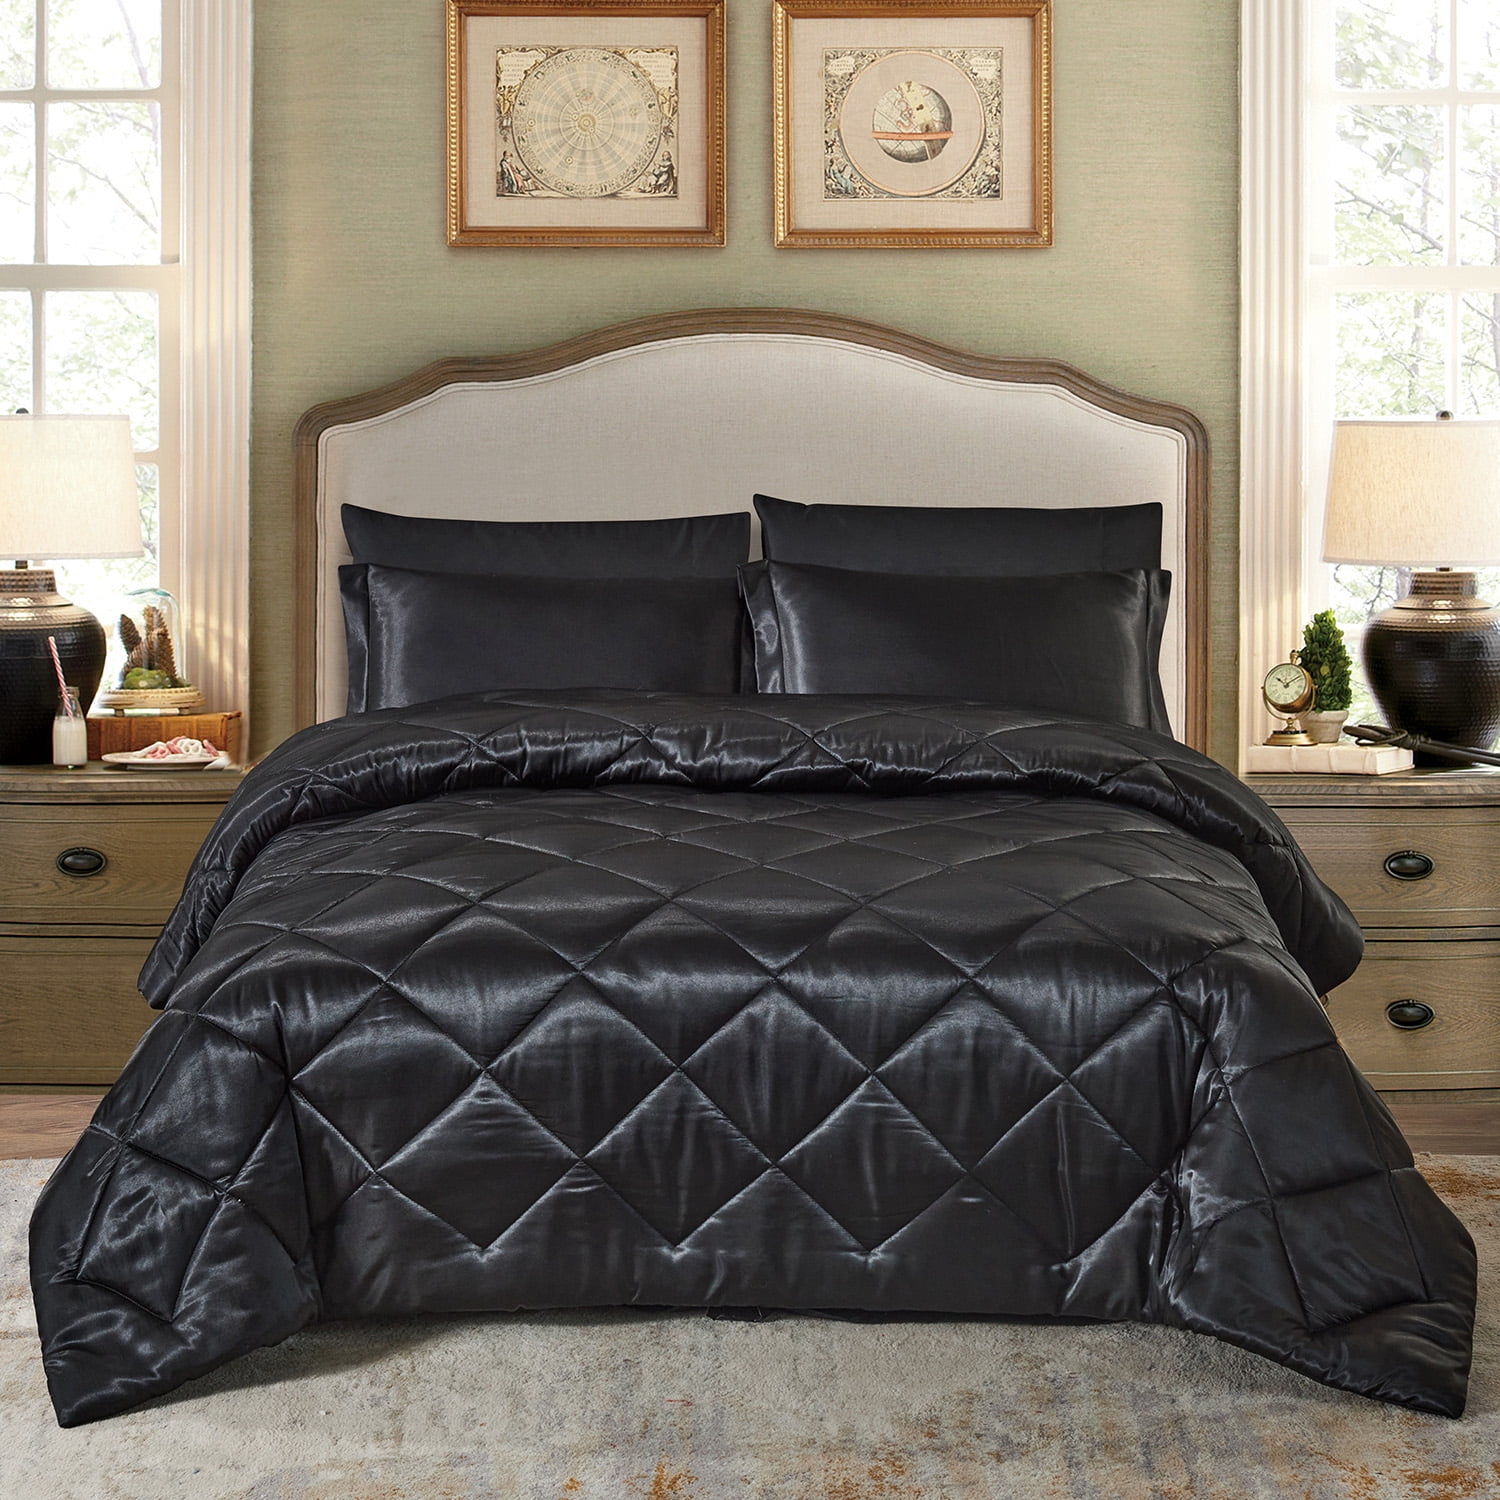 Best Queen Size Bed Sheet Set Royal Opulence Black Satin Silk Soft Bedding 4Pcs 